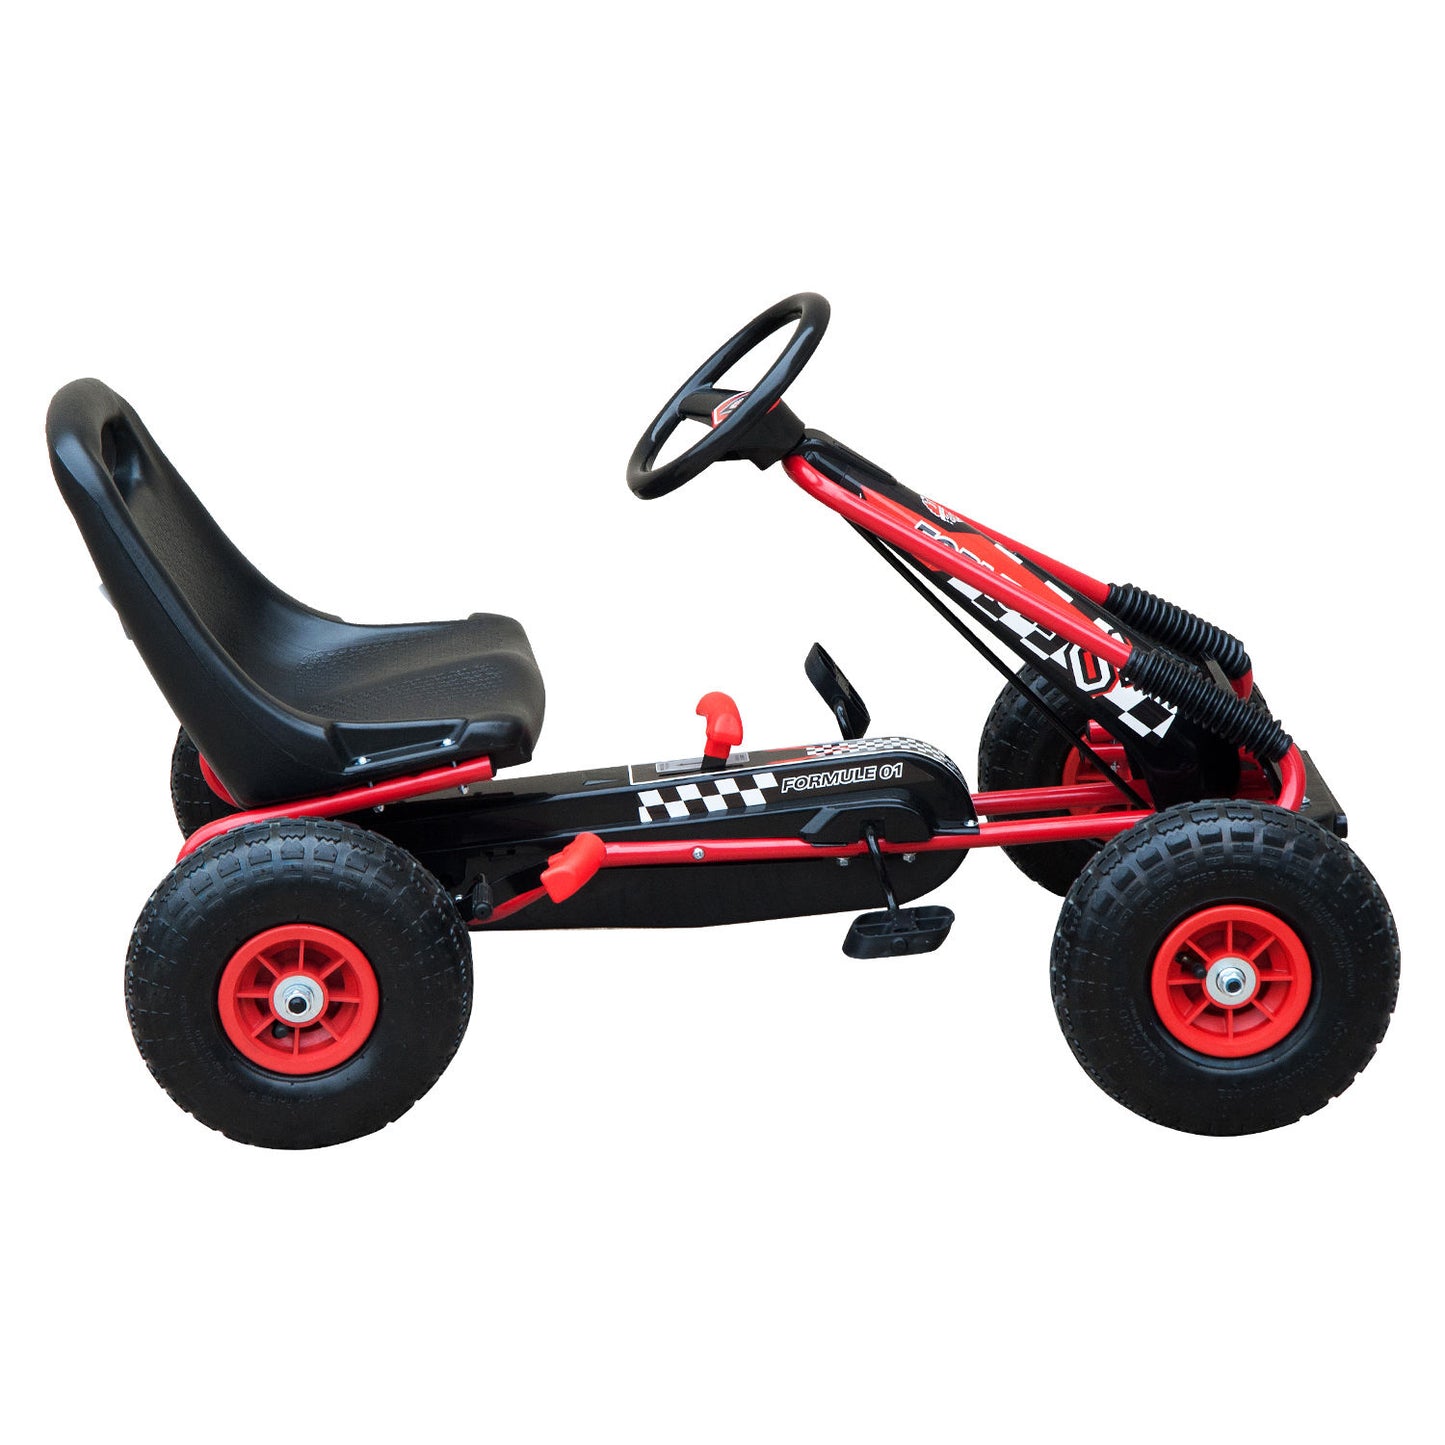 HOMCOM Pedal Go Kart W/EVA Wheels-Red/Black